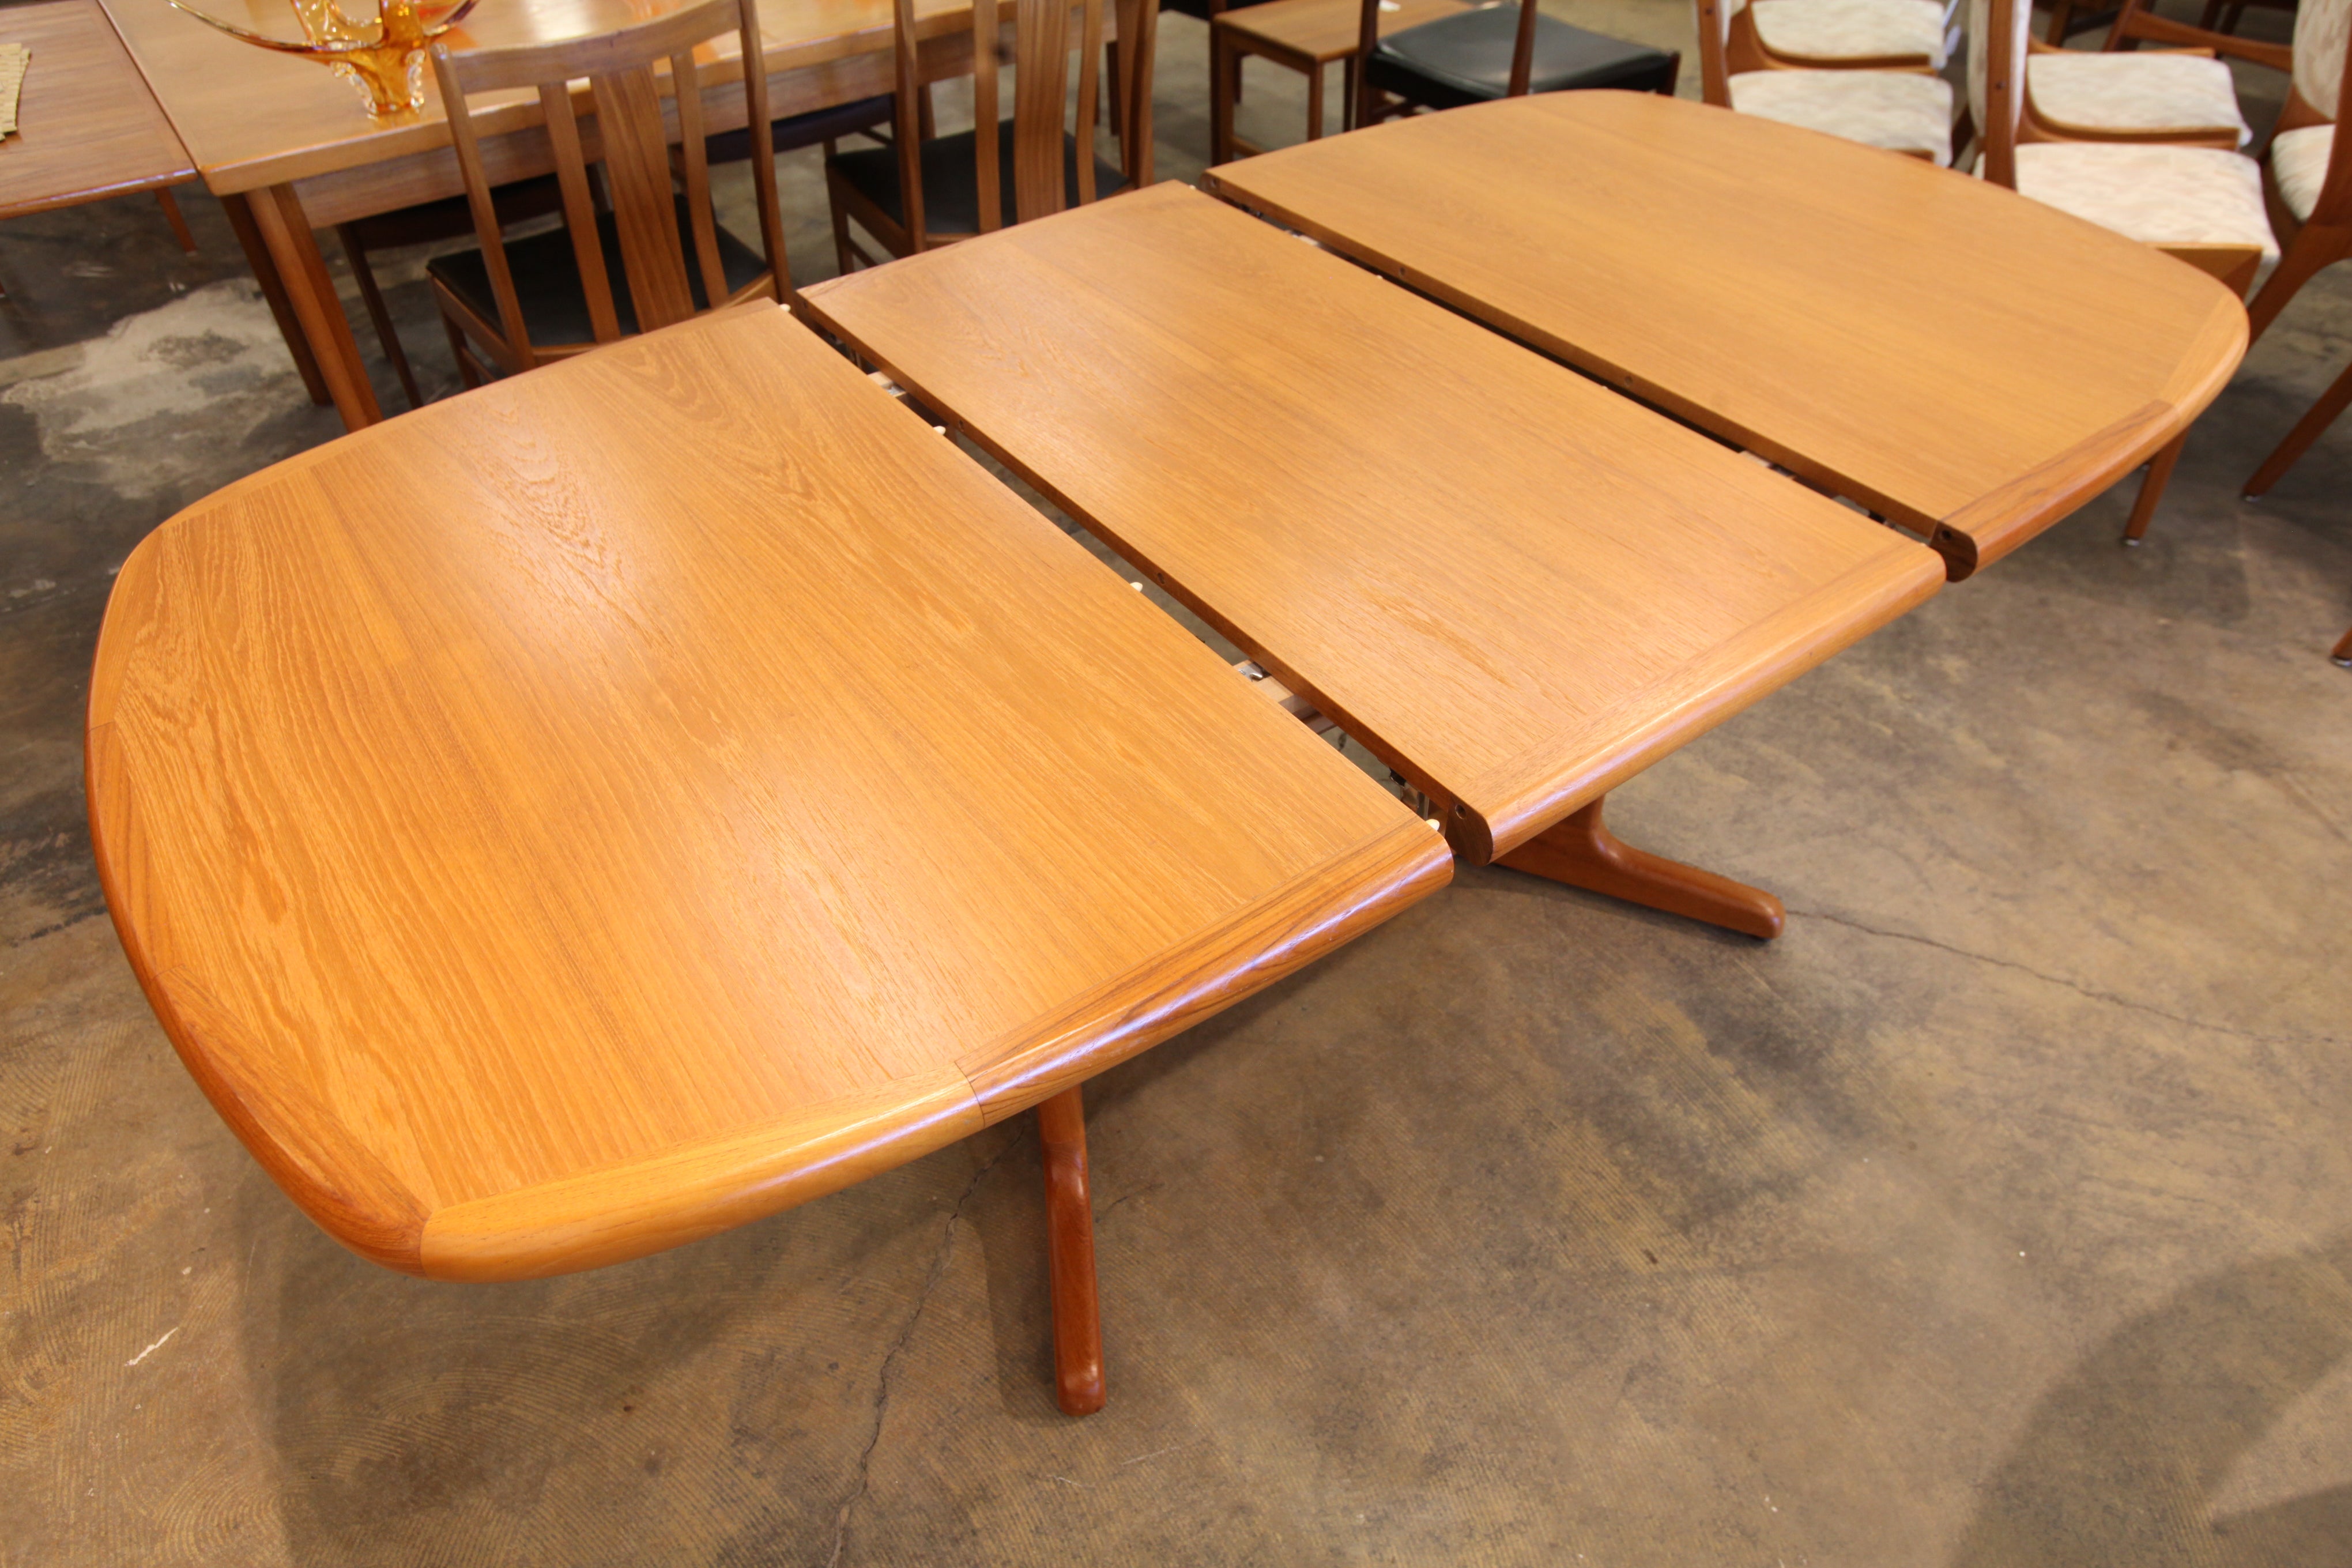 Vintage Teak Dining Table w/ One Leaf (53.5"L x 39.25"W) or (72"L x 39.25"W)